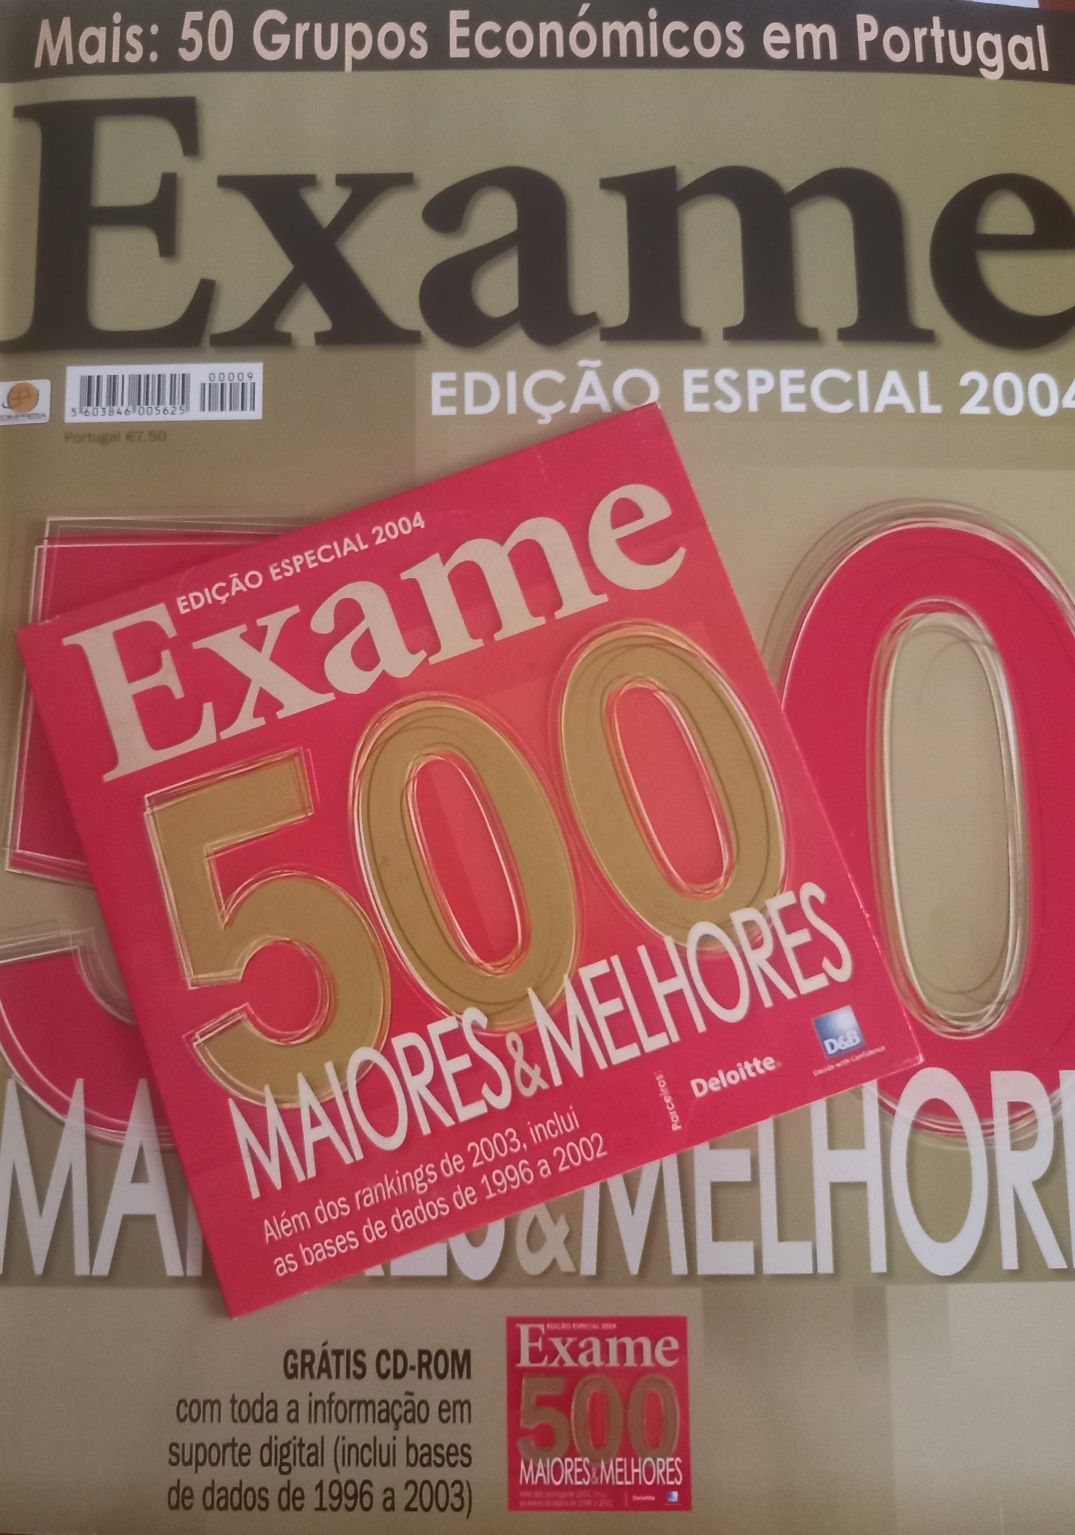 500 maiores 2004 e 50 grupos económicos em revista e CD-ROM